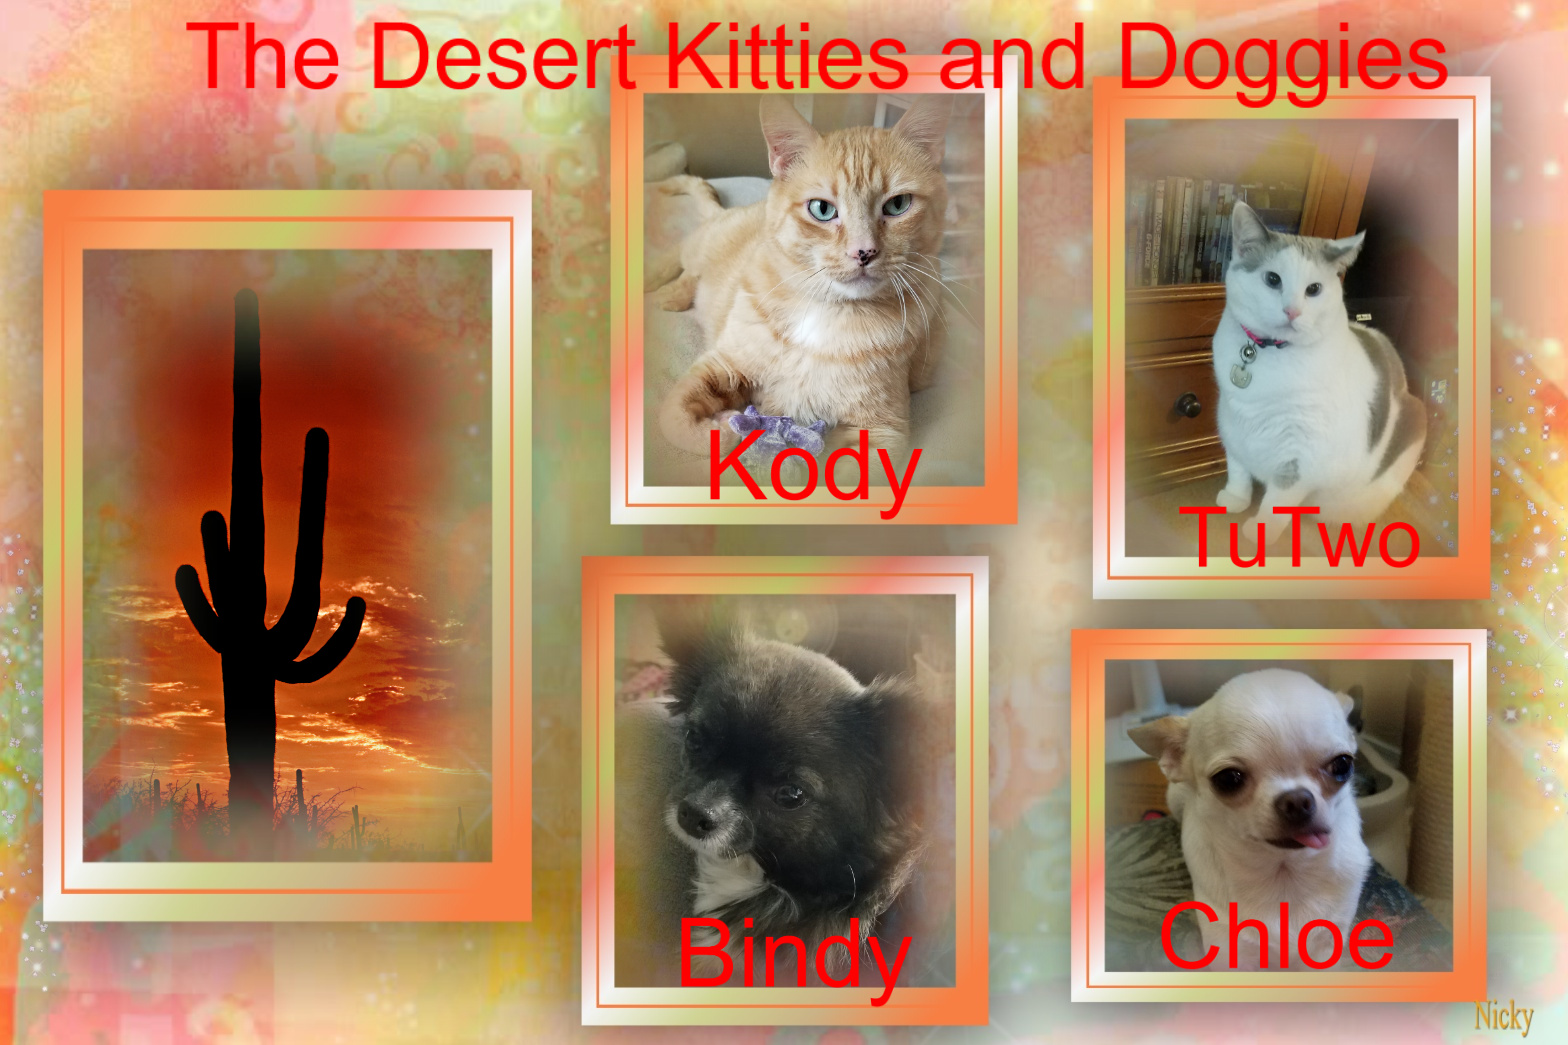 The Desert Kitties and doggies